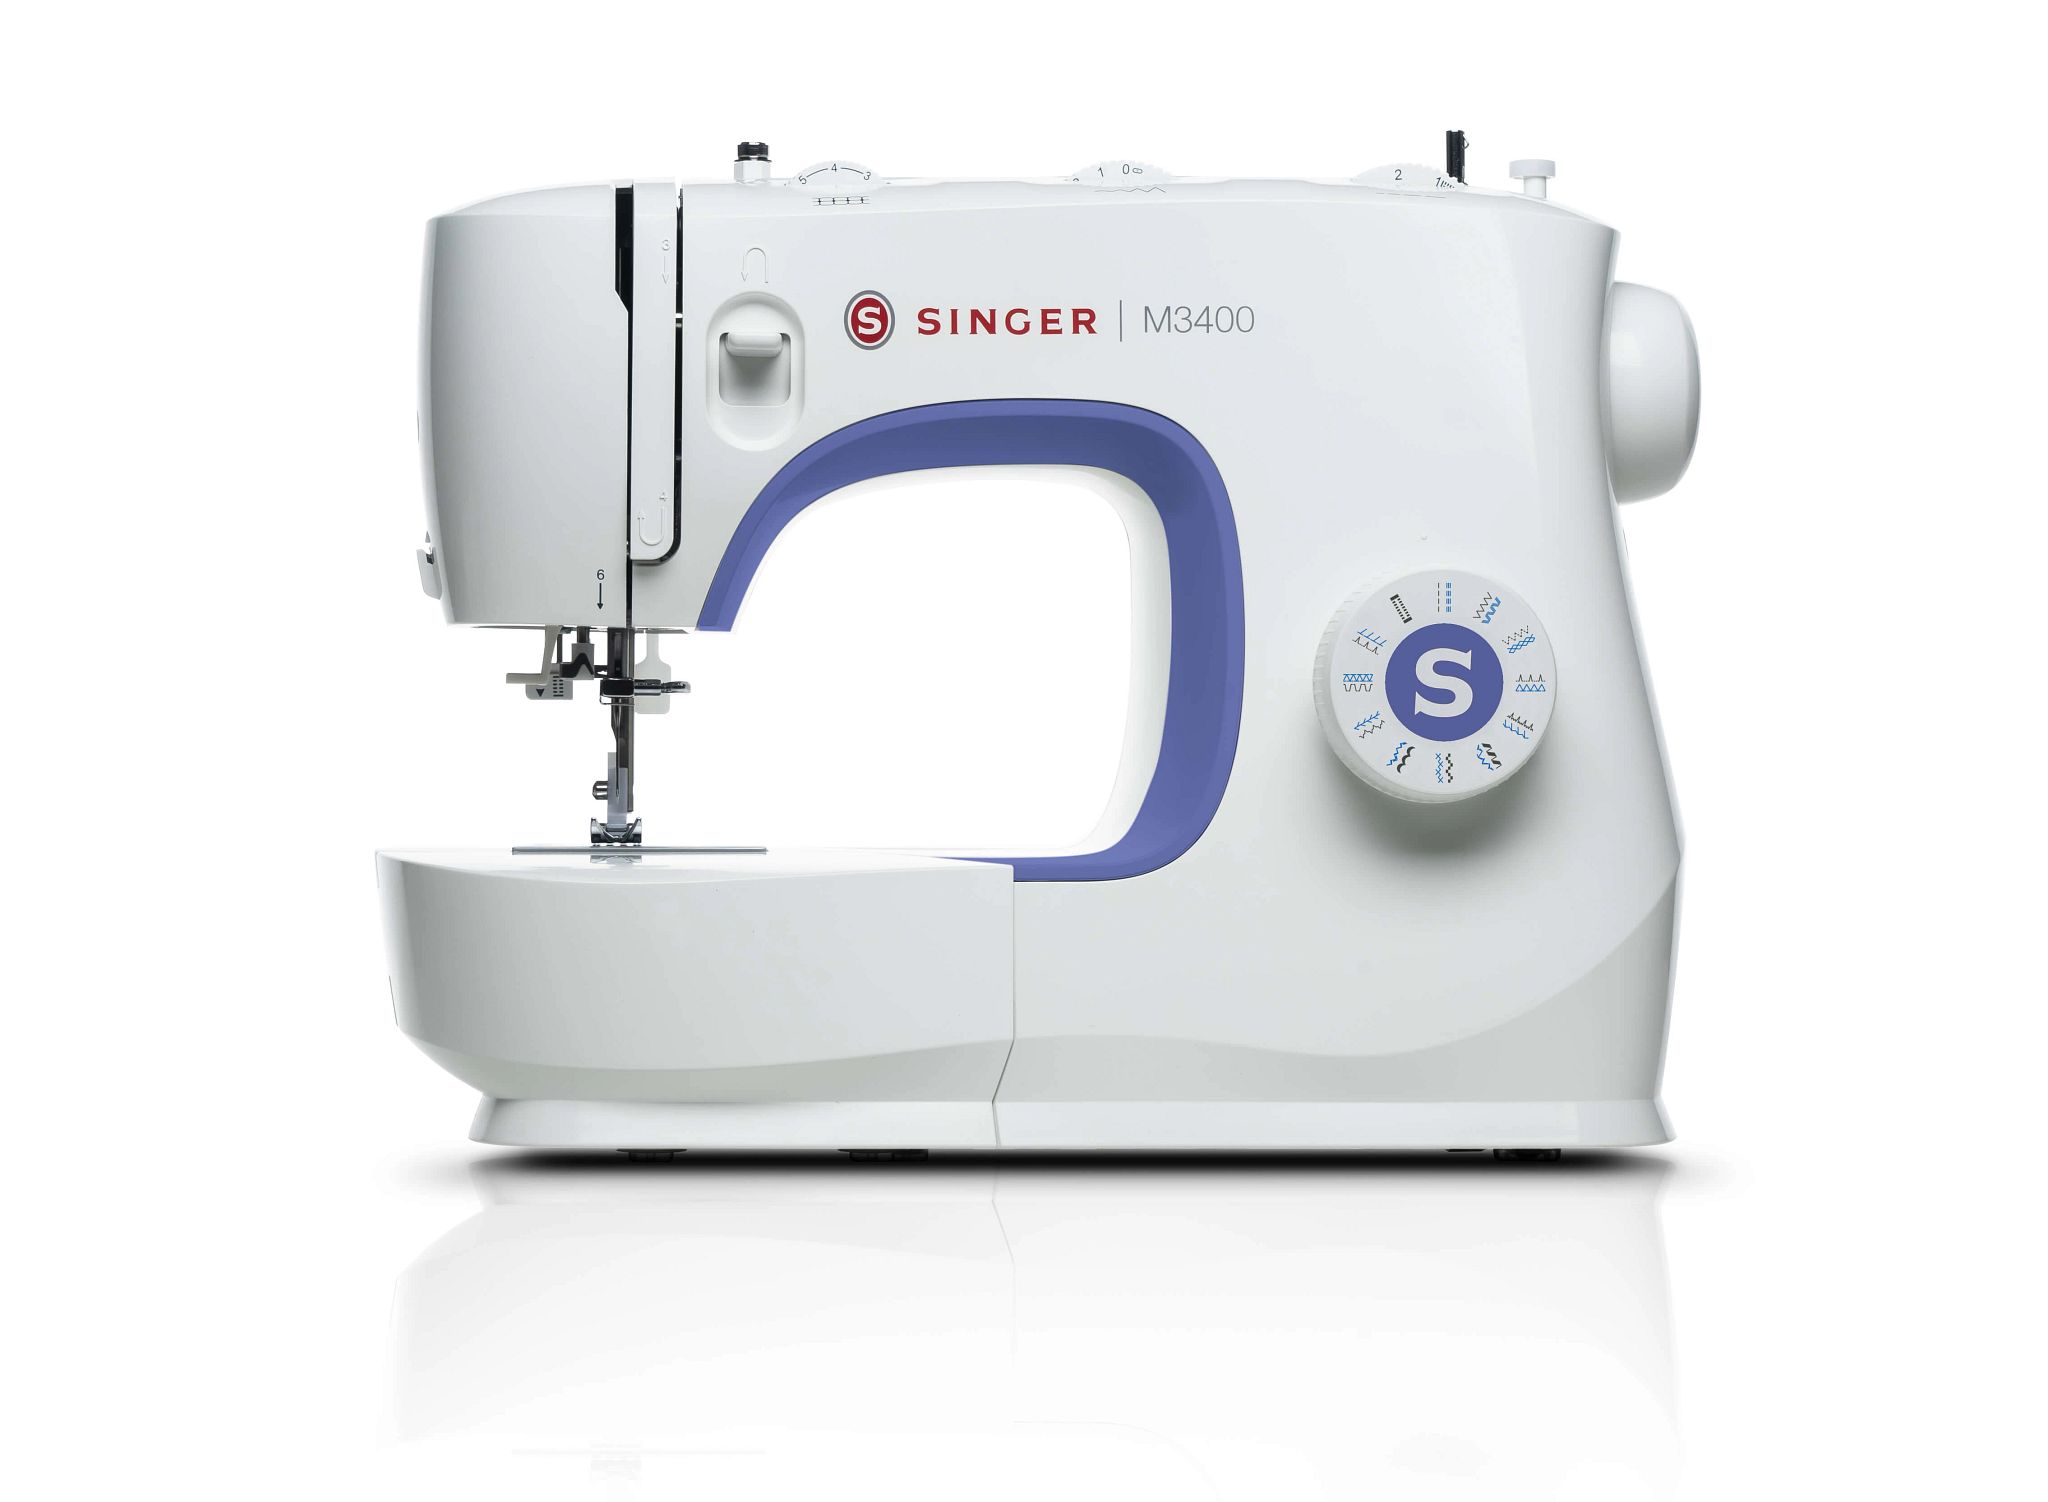 M3400 singer sewing machine